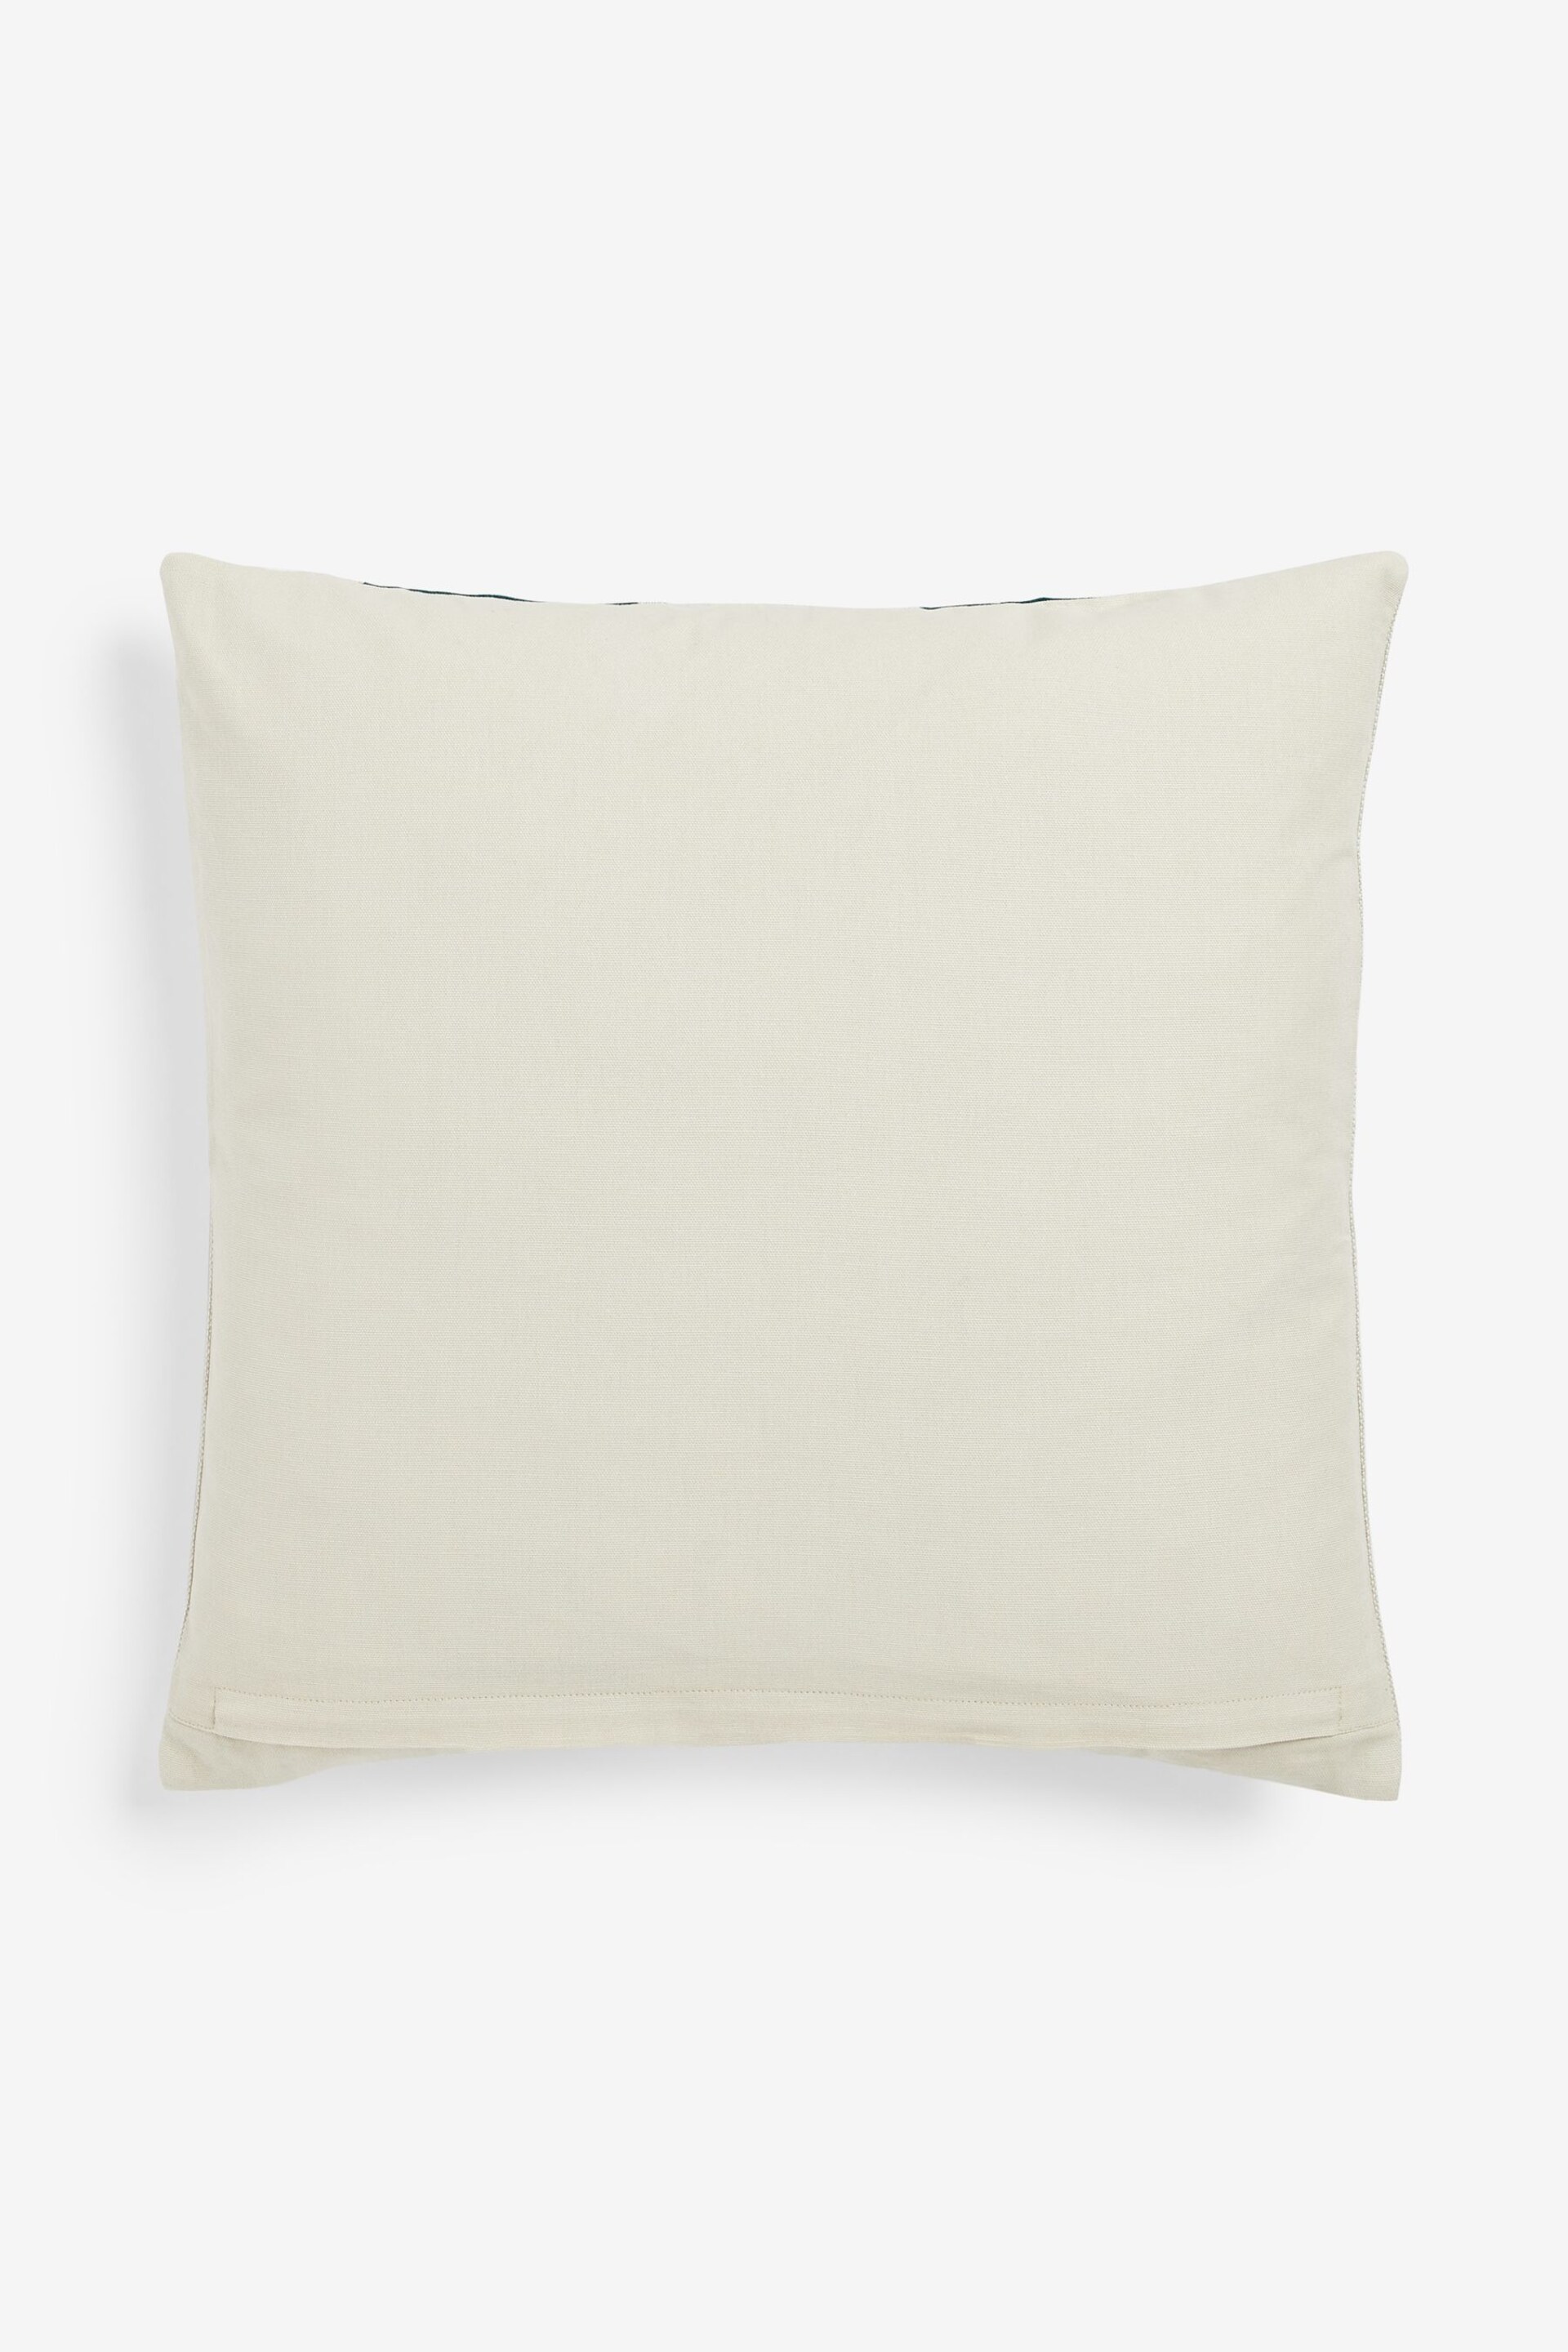 Teal Blue Stripe 50 x 50cm Linford Velvet Cushion - Image 3 of 5